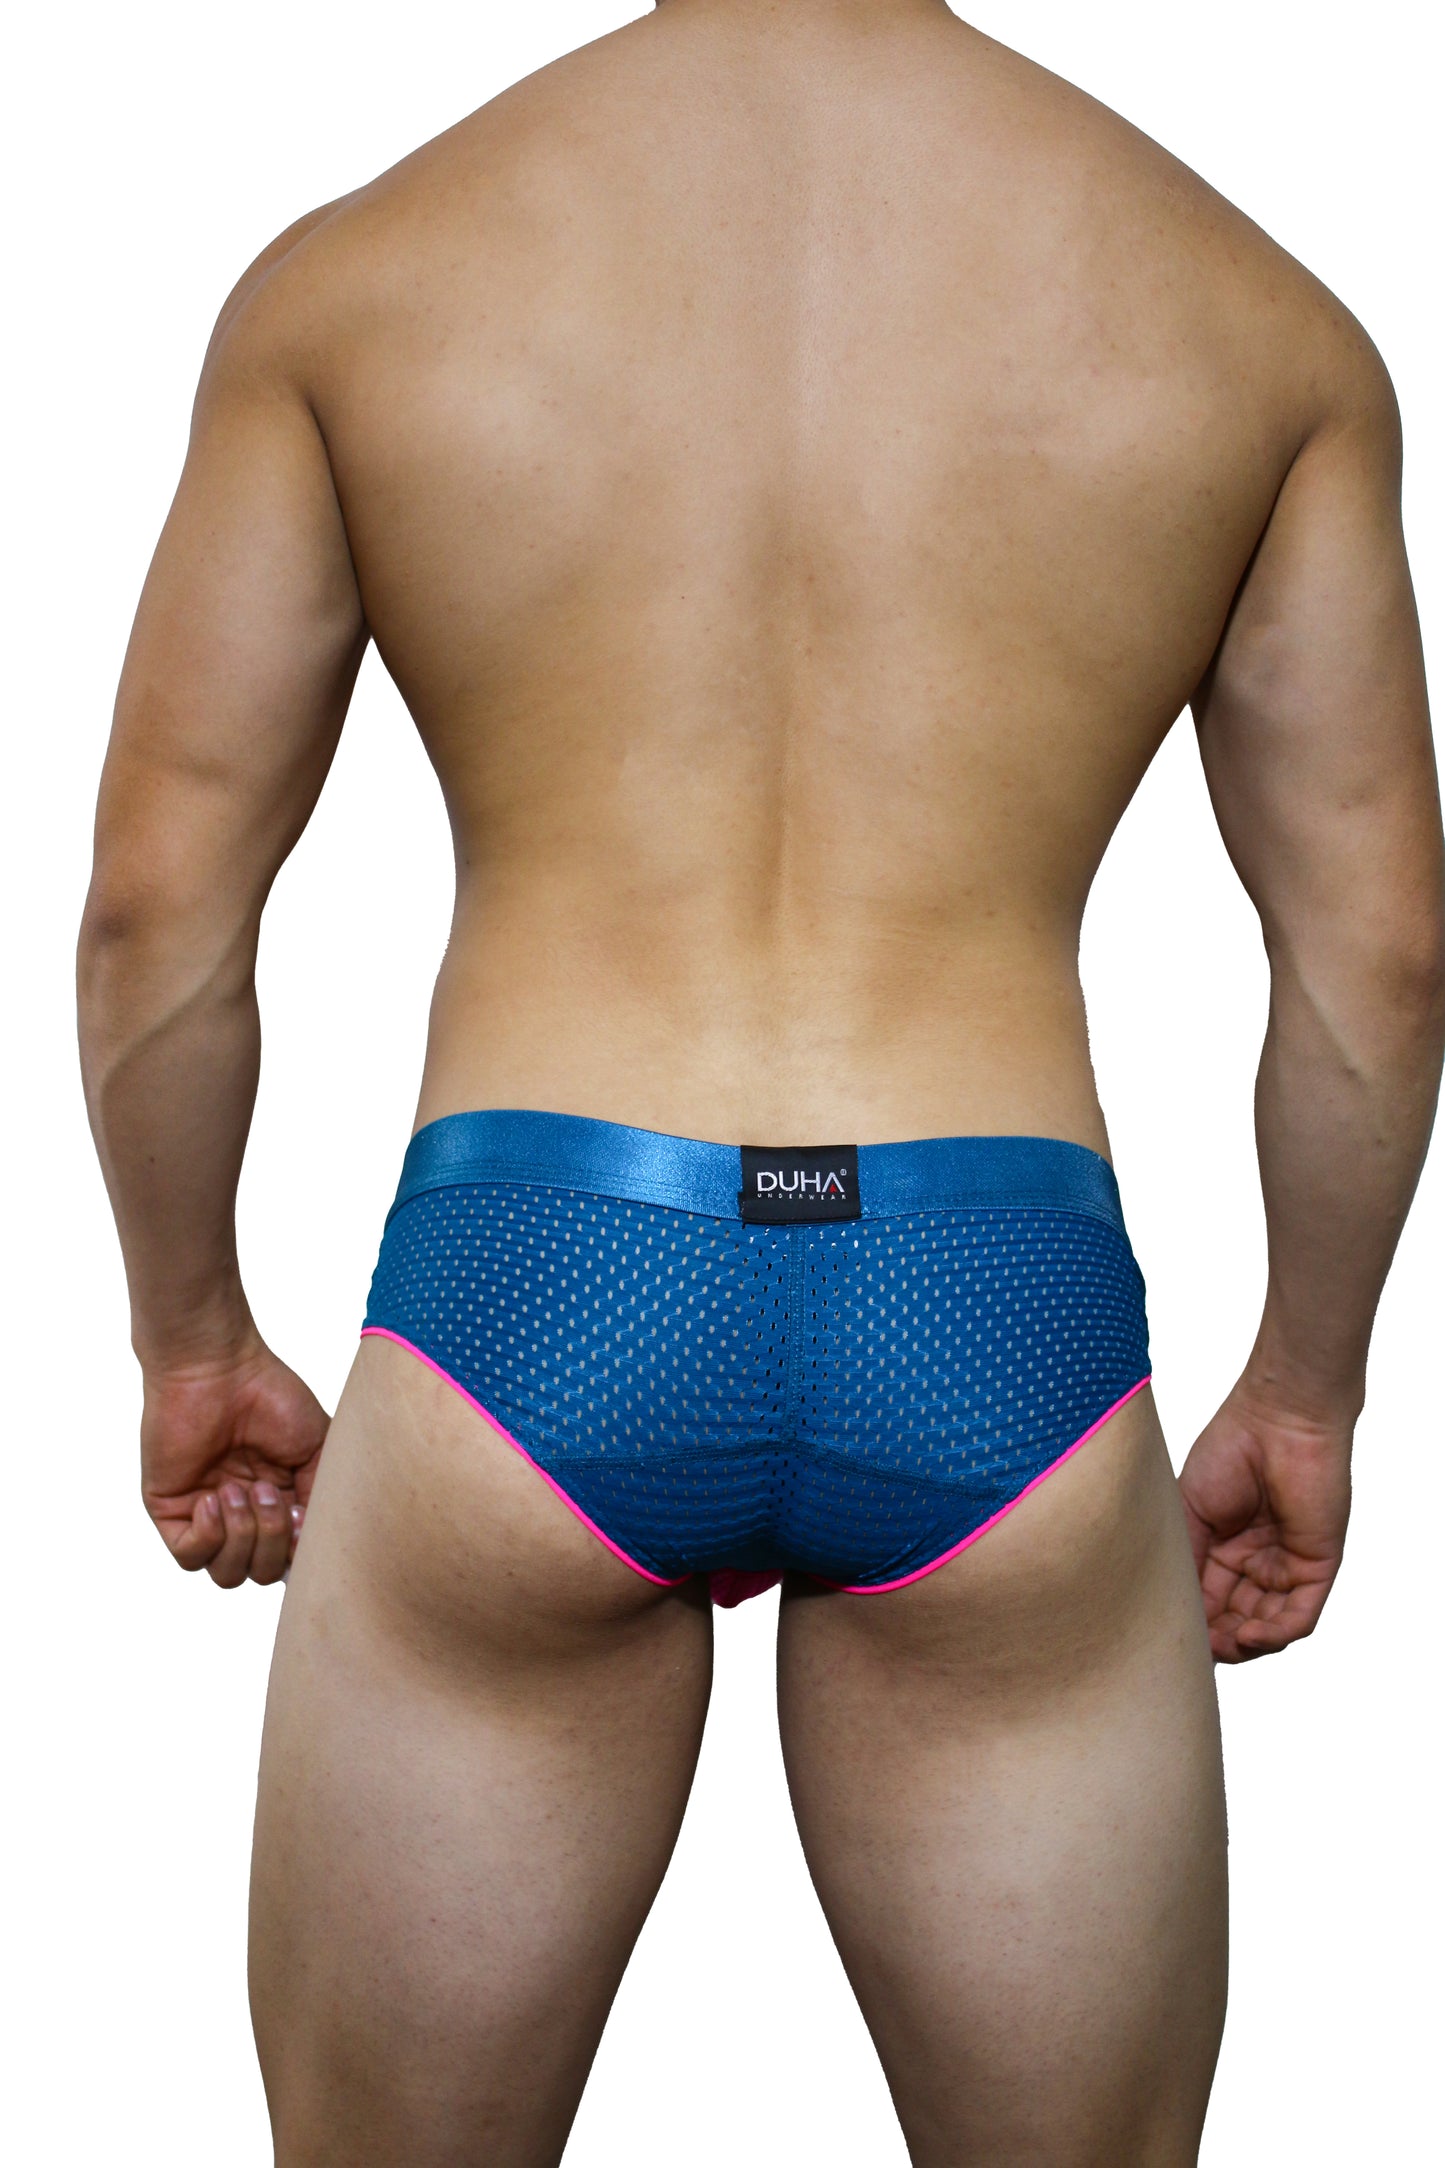 Boxer Brief Men Calzon Duha Underwear Chelsing DCHEMX021